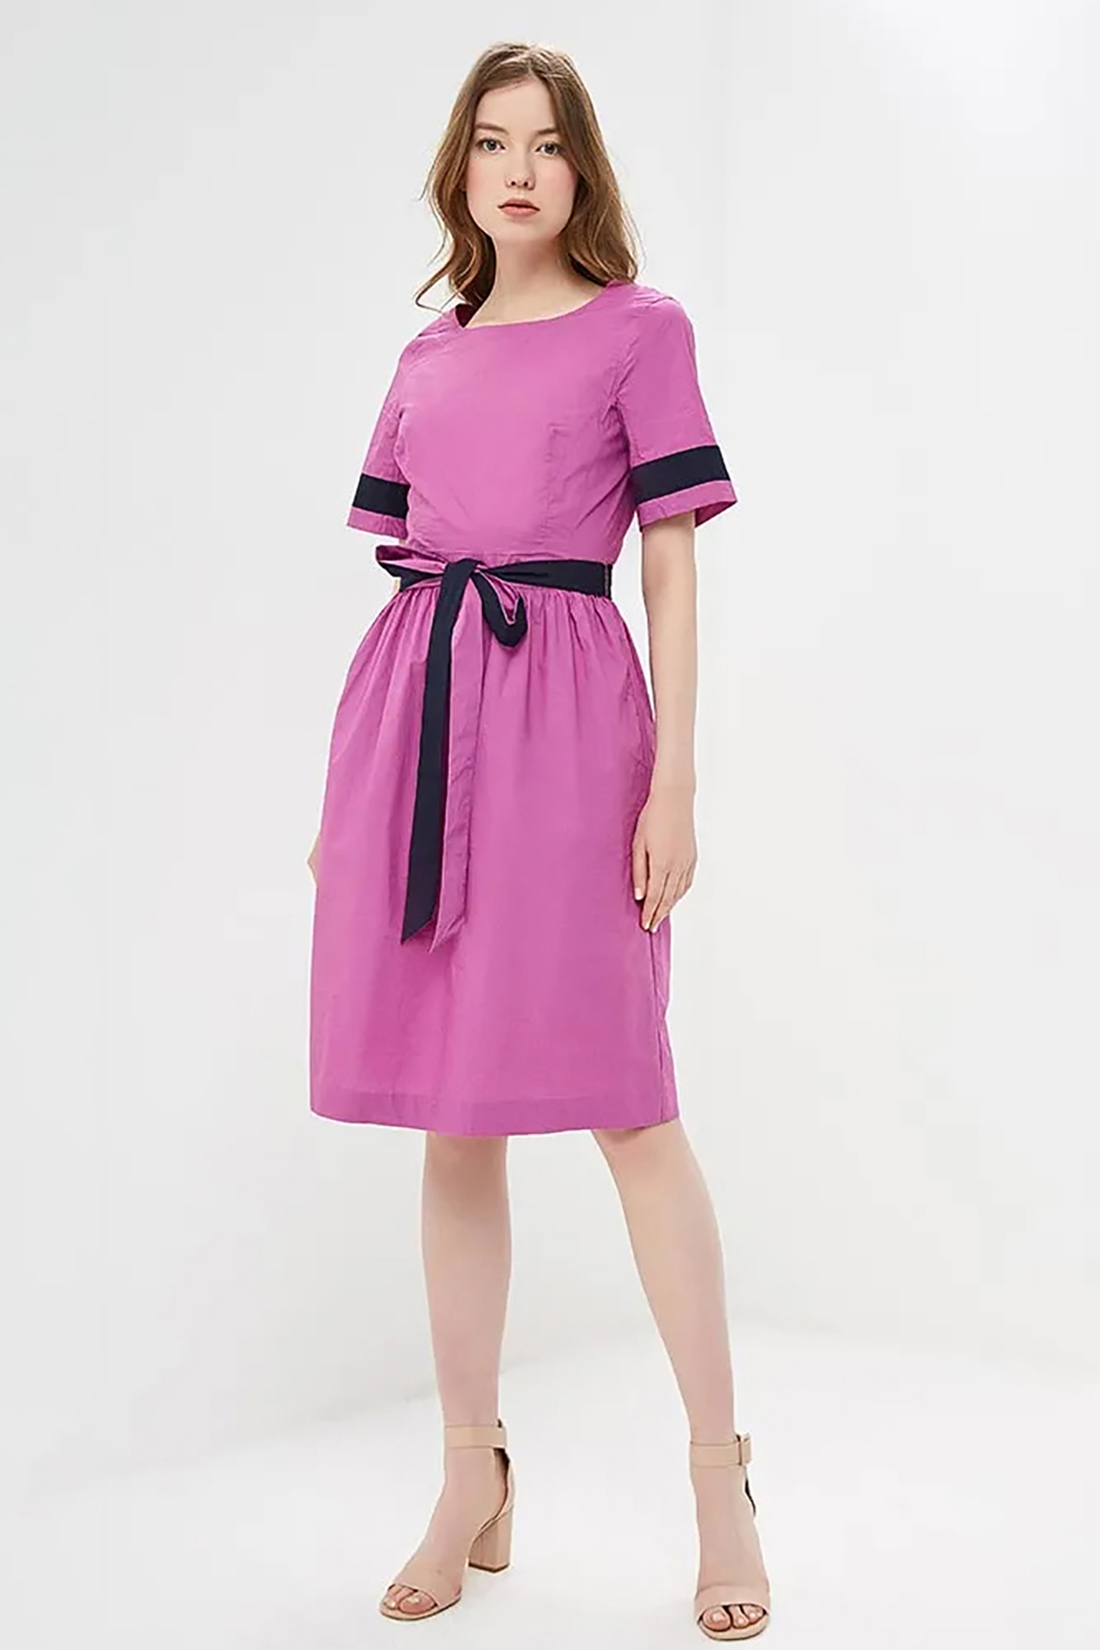 Платье с контрастной отделкой (арт. baon B459062), размер L, цвет розовый Платье с контрастной отделкой (арт. baon B459062) - фото 1